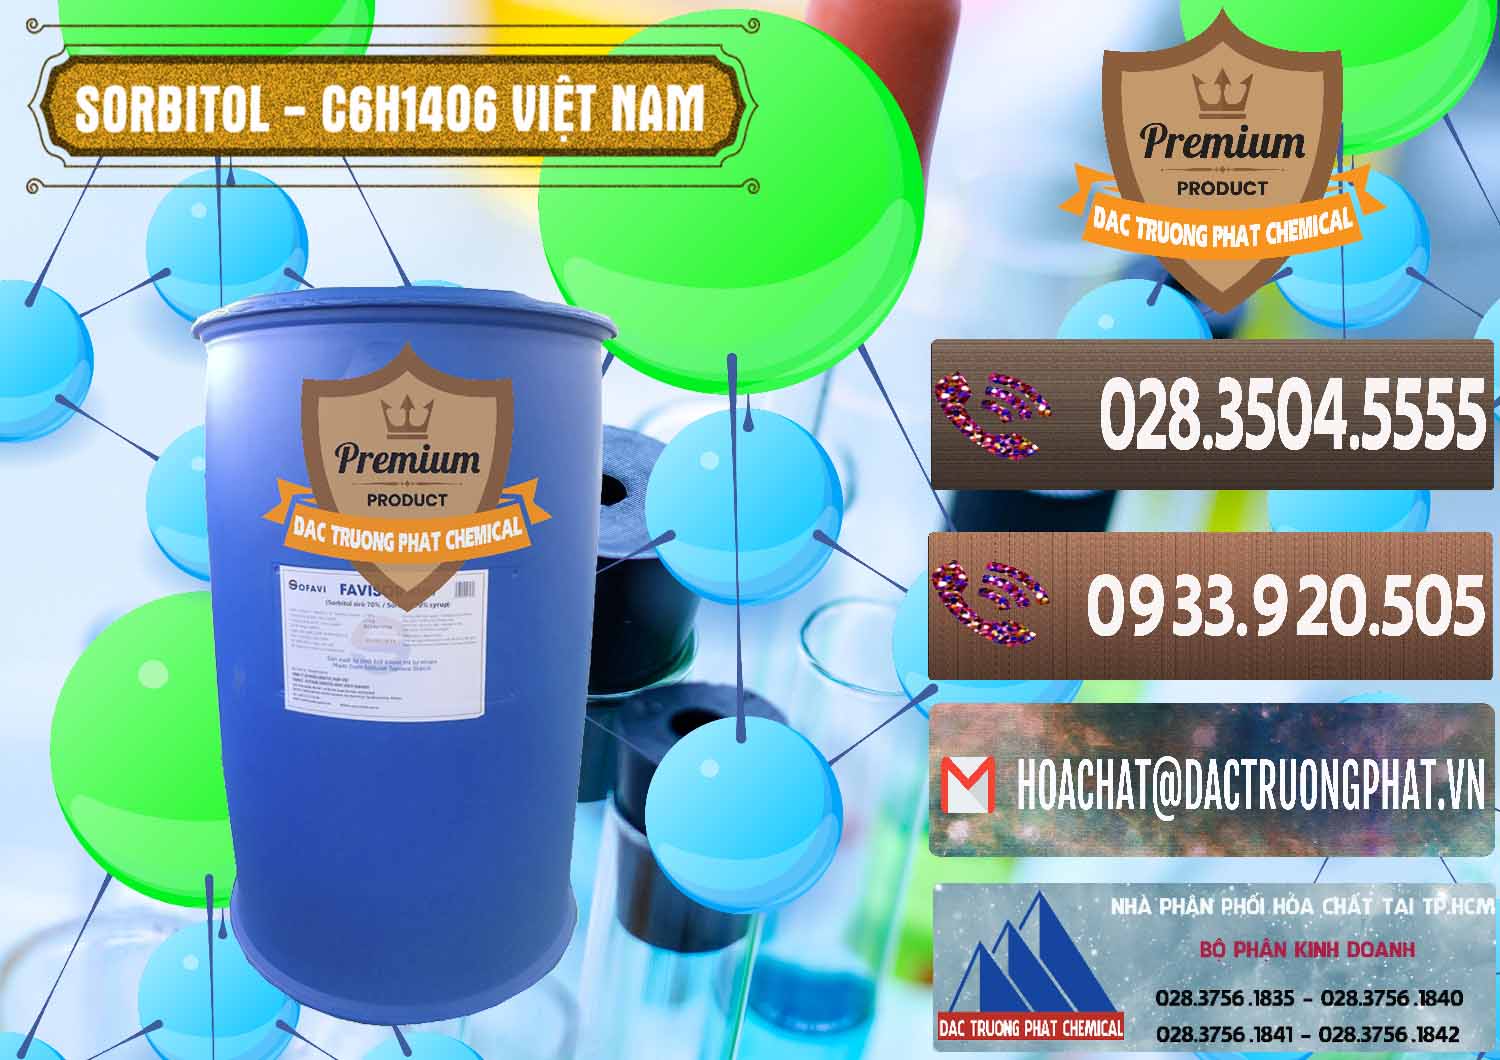 Nơi bán và phân phối Sorbitol - C6H14O6 Lỏng 70% Food Grade Việt Nam - 0438 - Chuyên kinh doanh & bán hóa chất tại TP.HCM - hoachatviet.net